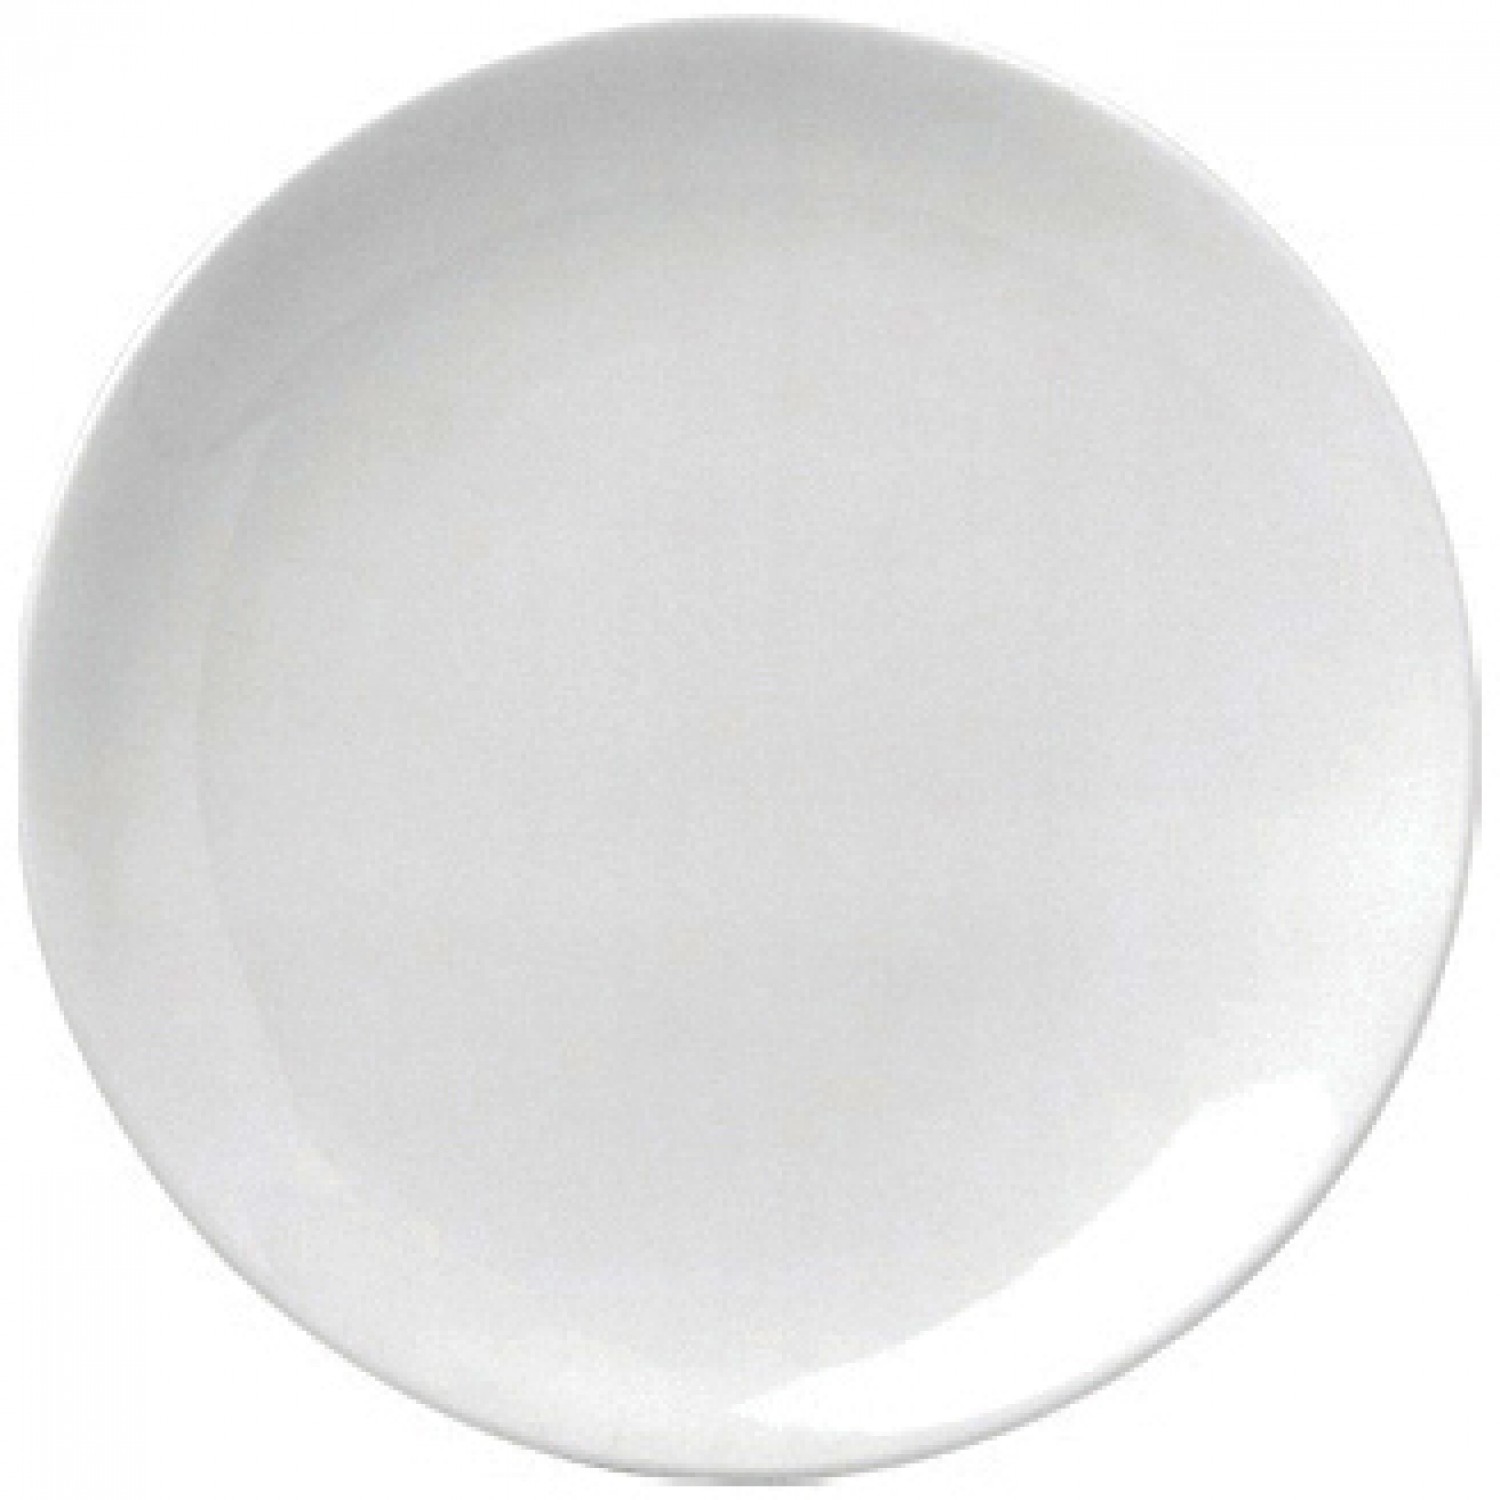 Πιάτο Ρηχό Στρογγυλό Coupe 28cm Άσπρο Πορσελάνης "ΕΟ" Gural 52.84007